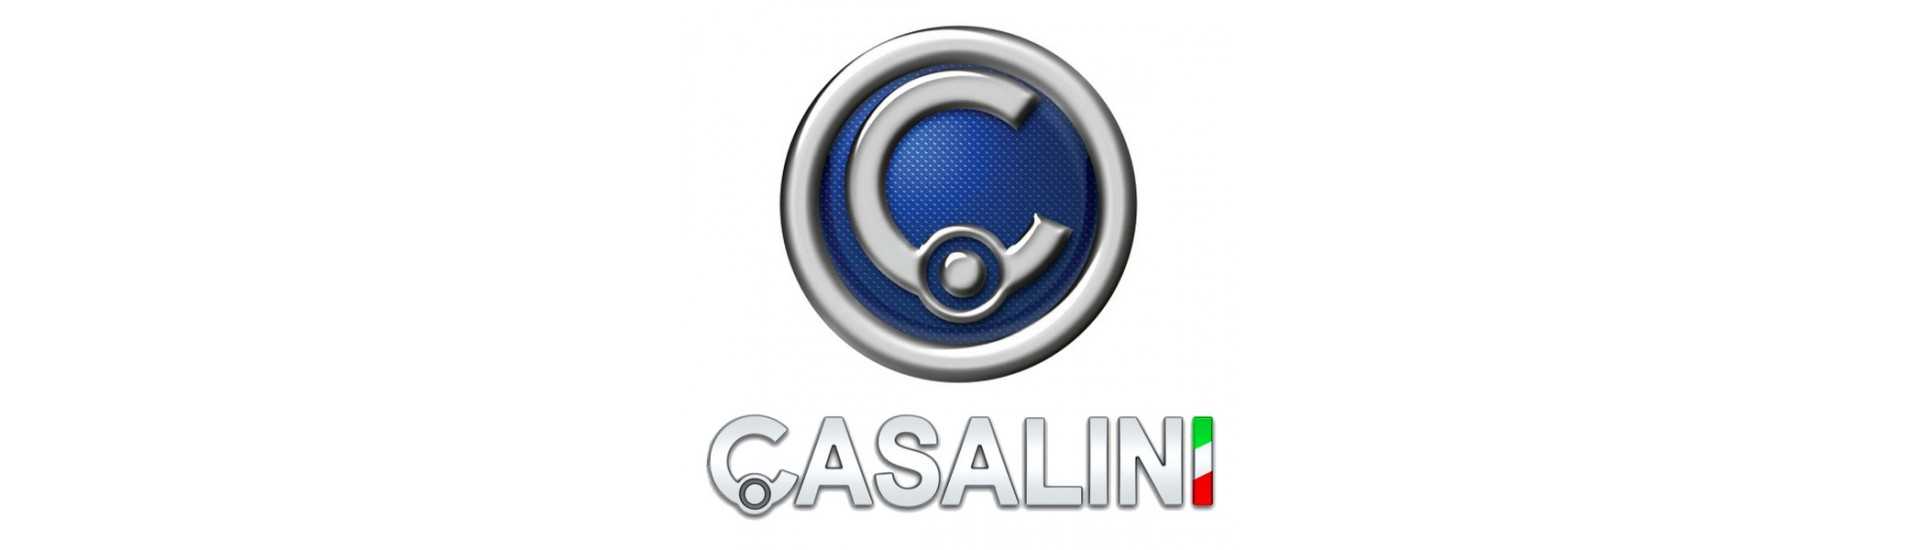 Quebra ao melhor preço para o carro sem uma permissão Casalini